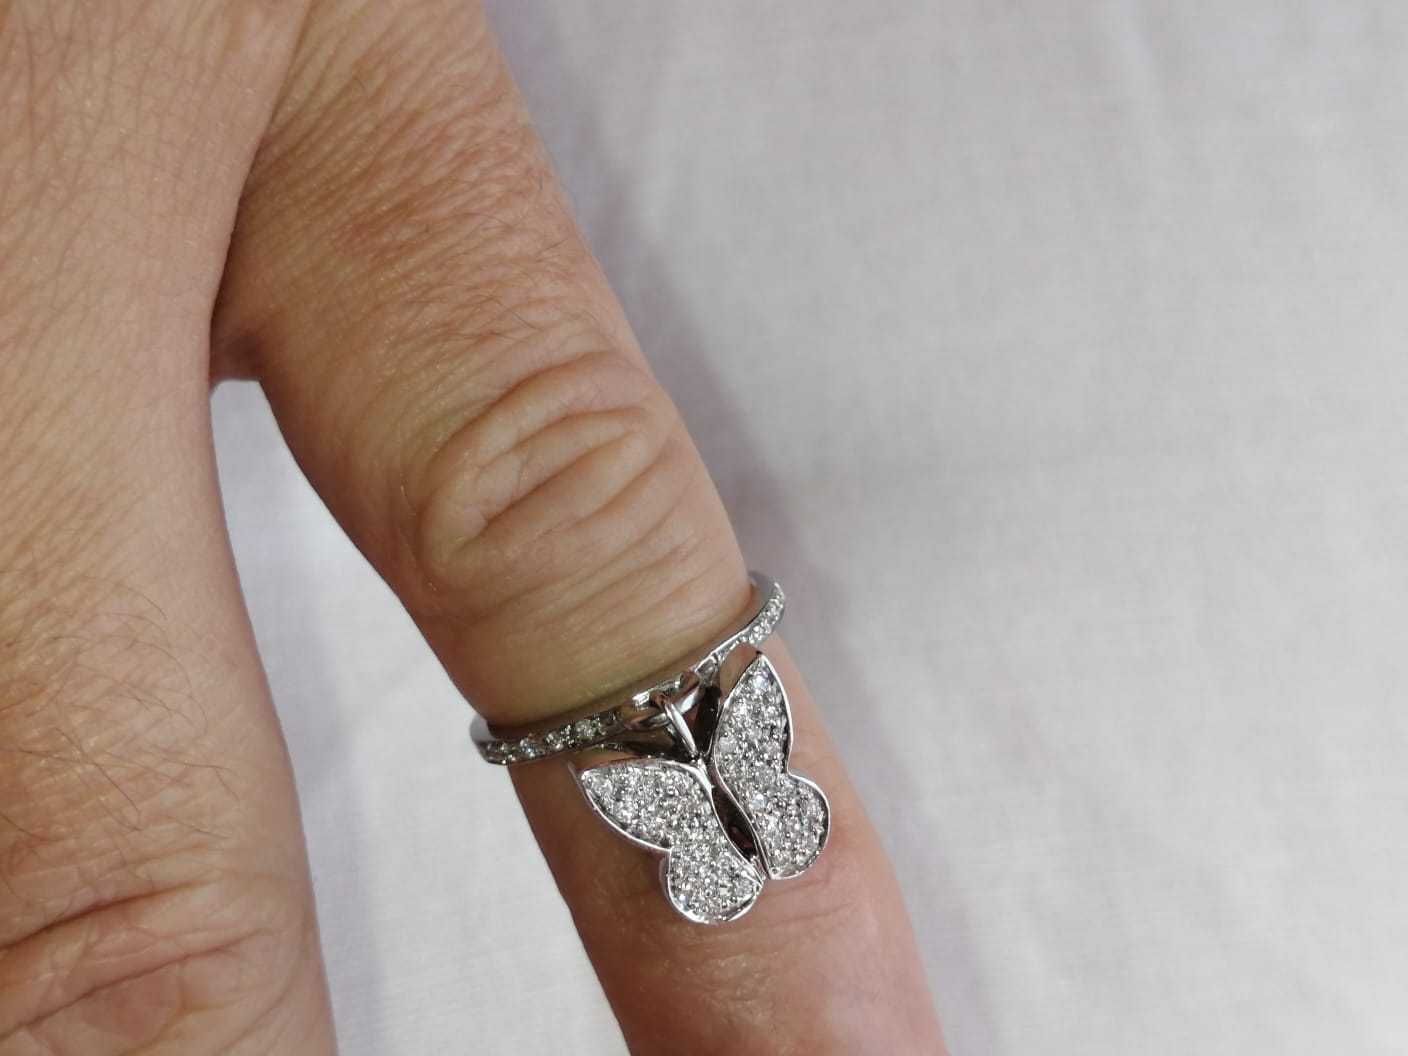 Vand inel aur alb 18k cu charm model fluture, diamante 0,40ct